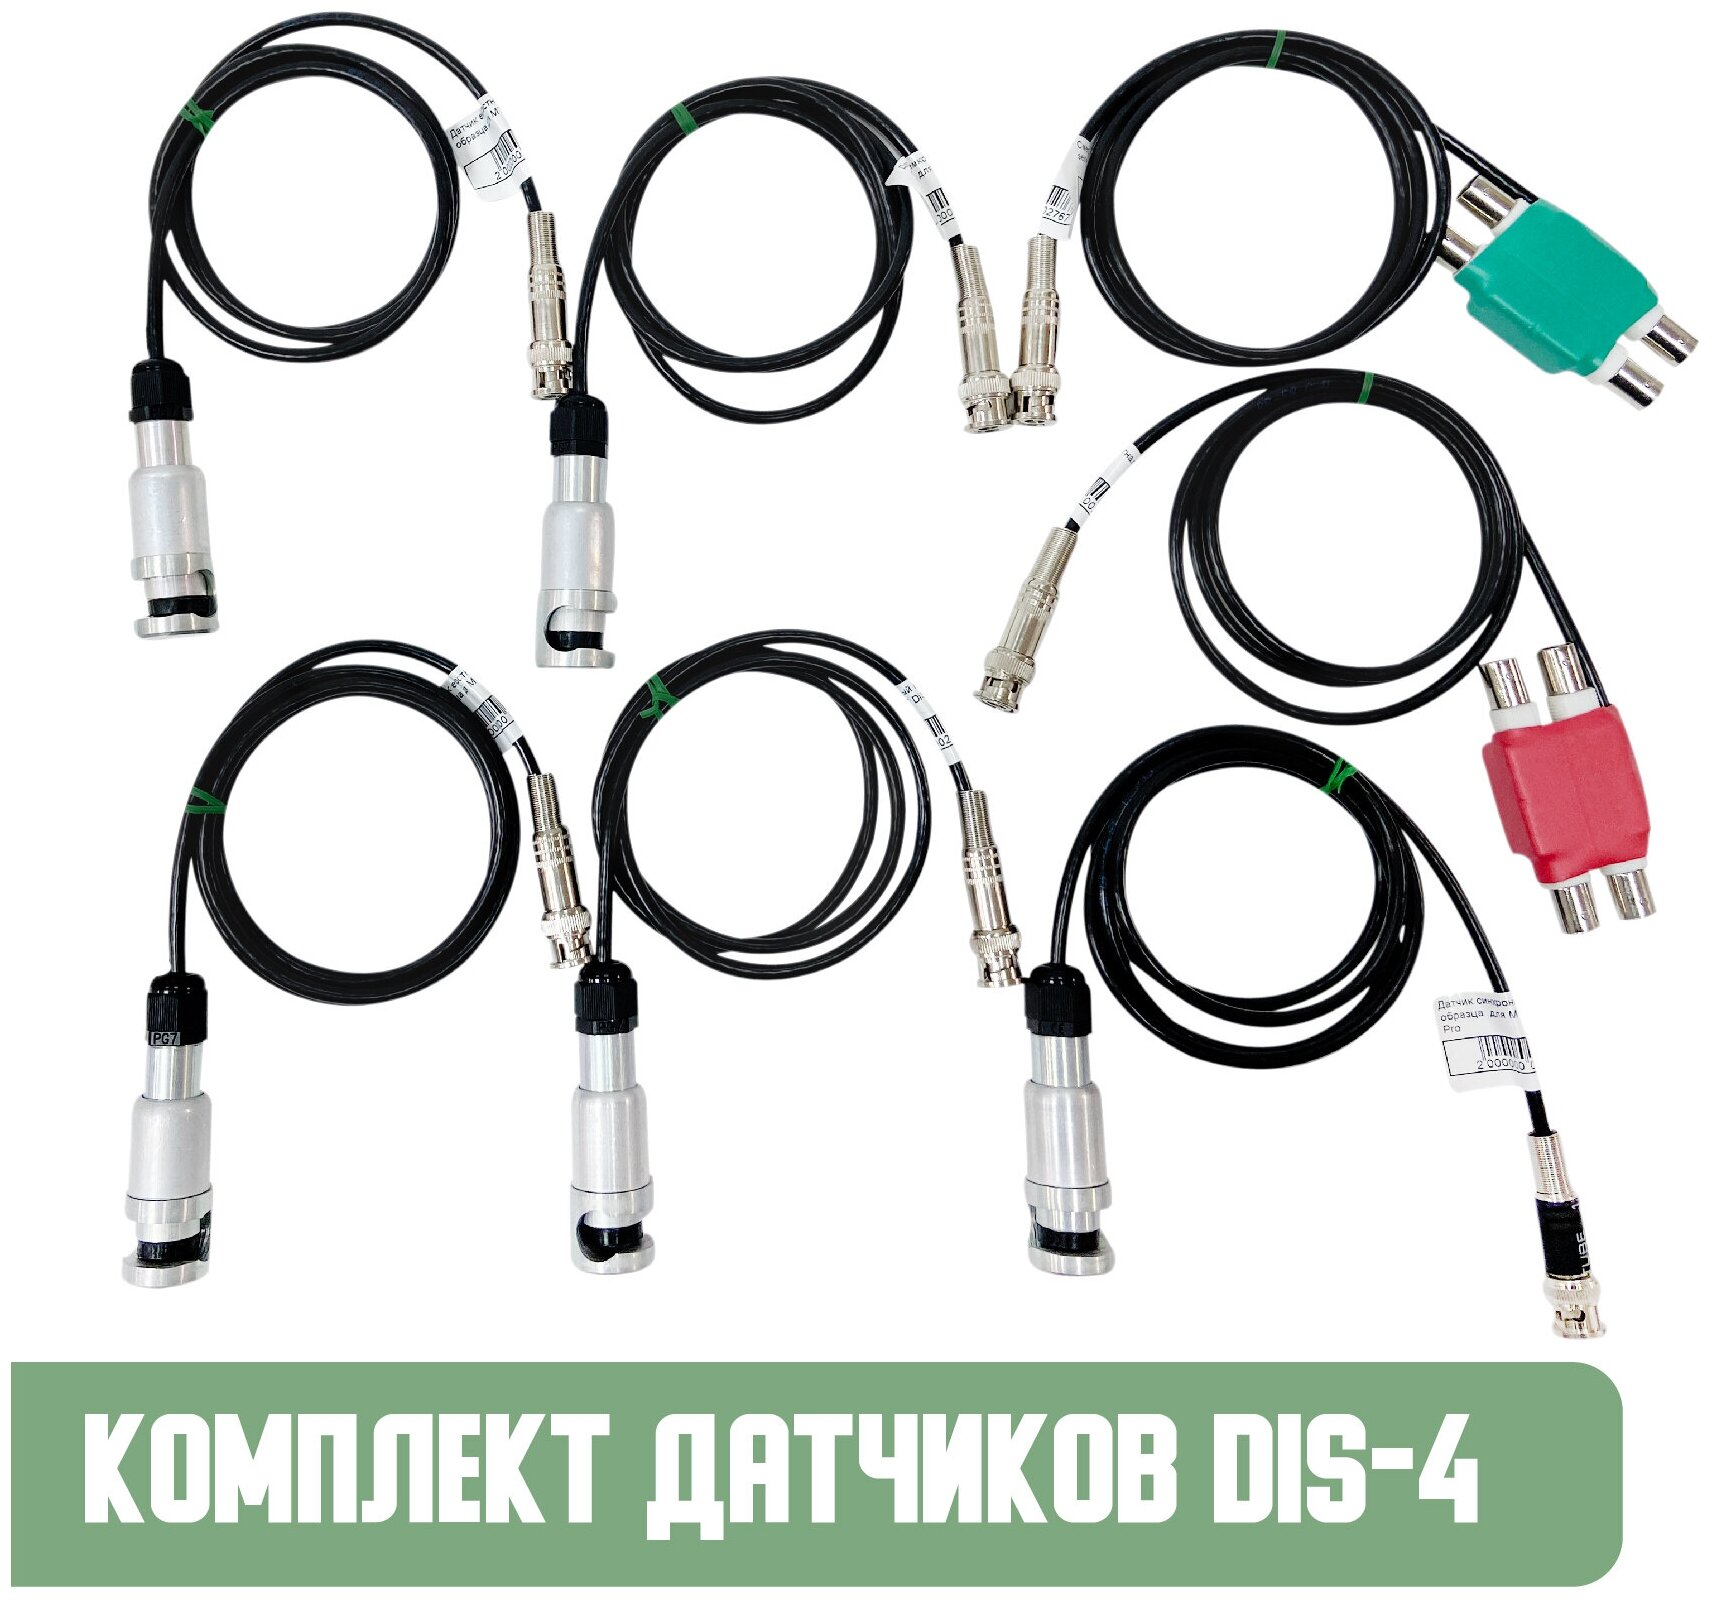 Диагностический комплект датчиков Мотор-Мастер Ёмкостные DiS-4 для USB осциллографов (4 датчика, 1 синхронизации, 2 смесителя)